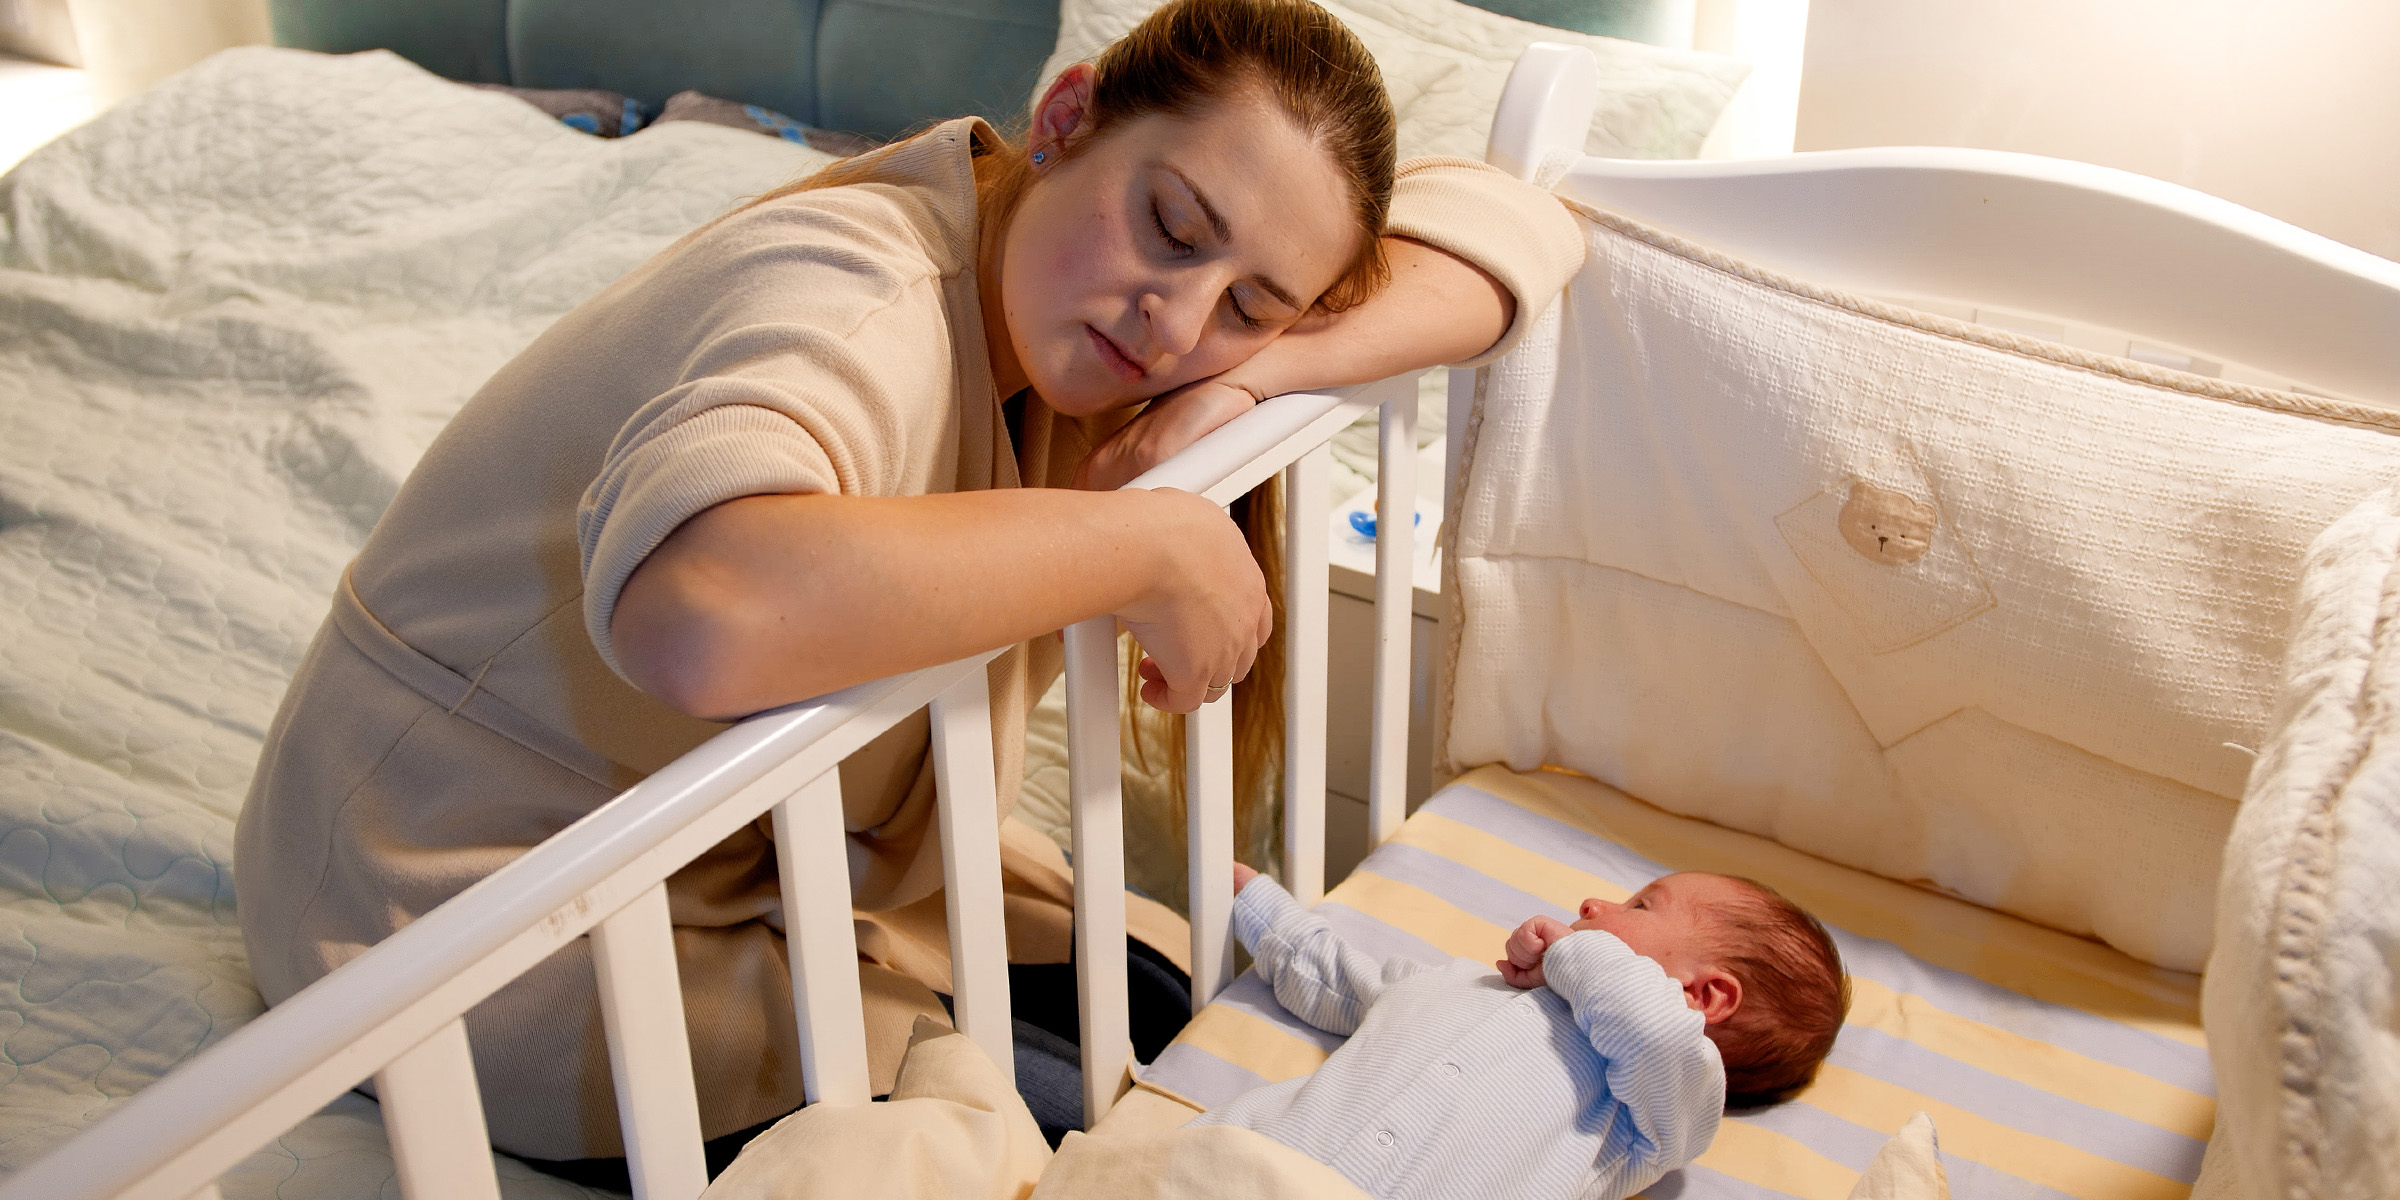 Madre cansada y un recién nacido | Fuente: Shutterstock